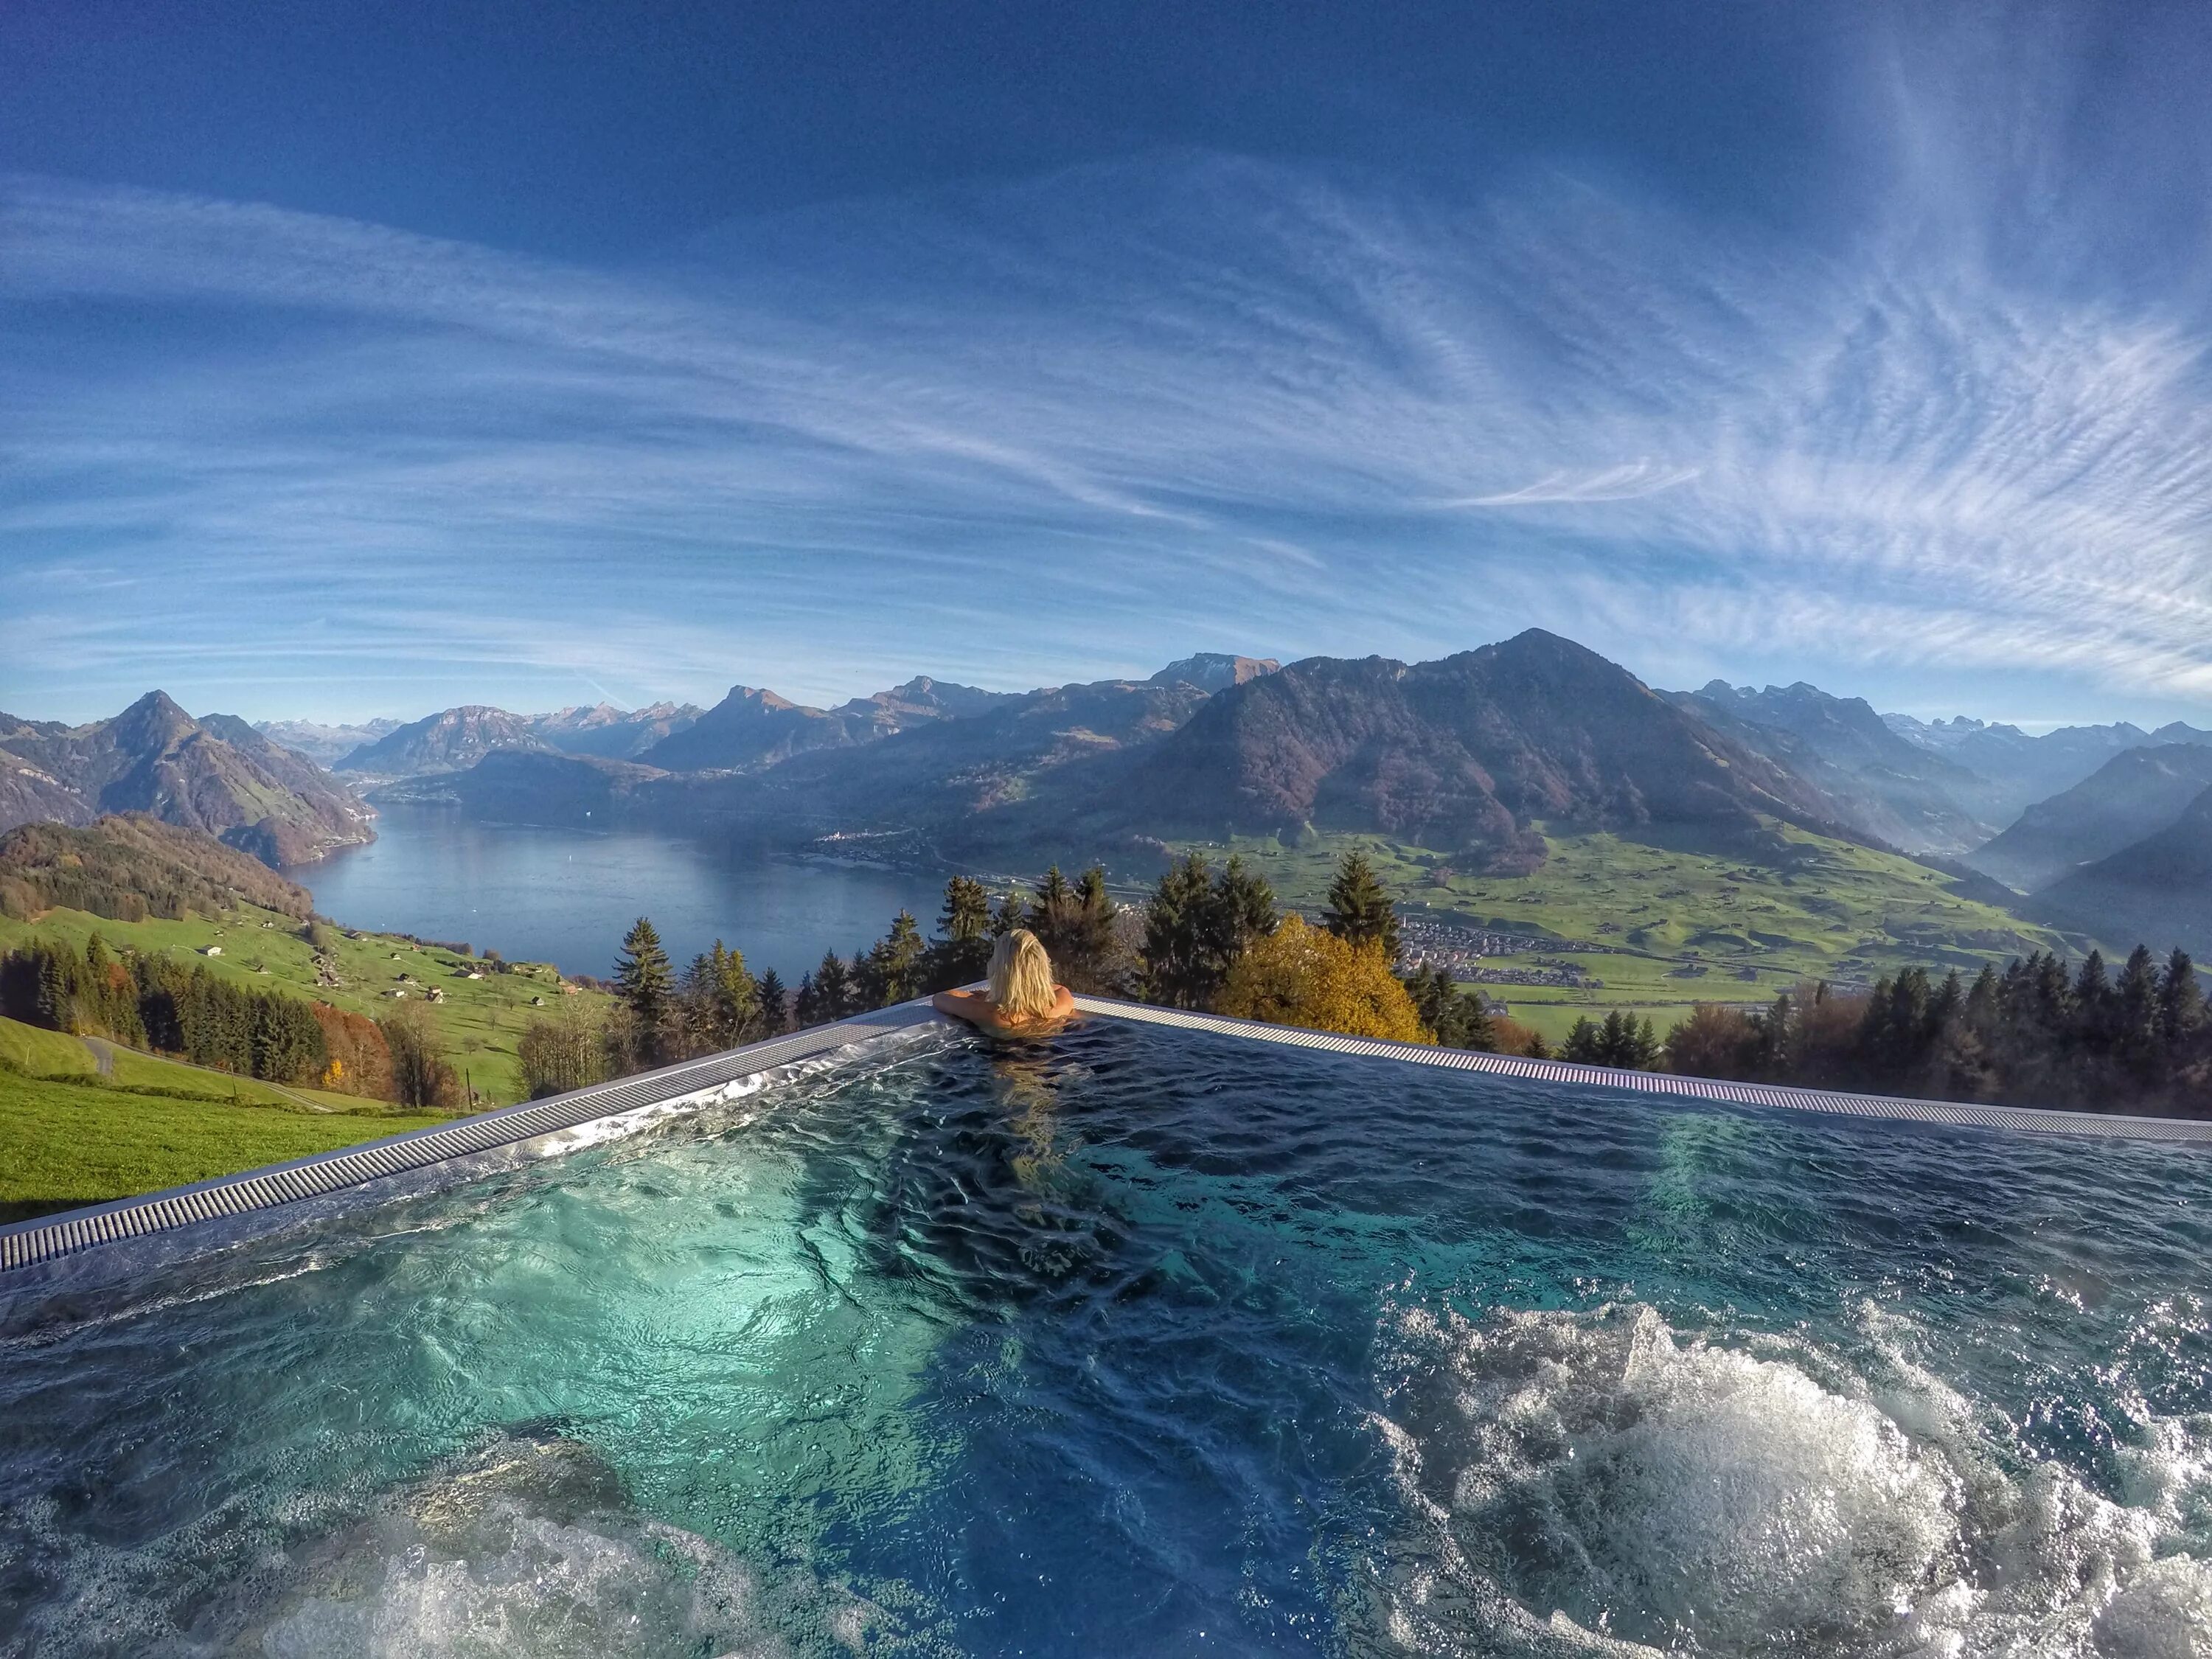 Amazing view. Villa Honegg. Hotel Villa Honegg. Вилла Хонегг Швейцария. Швейцария бассейн в горах.